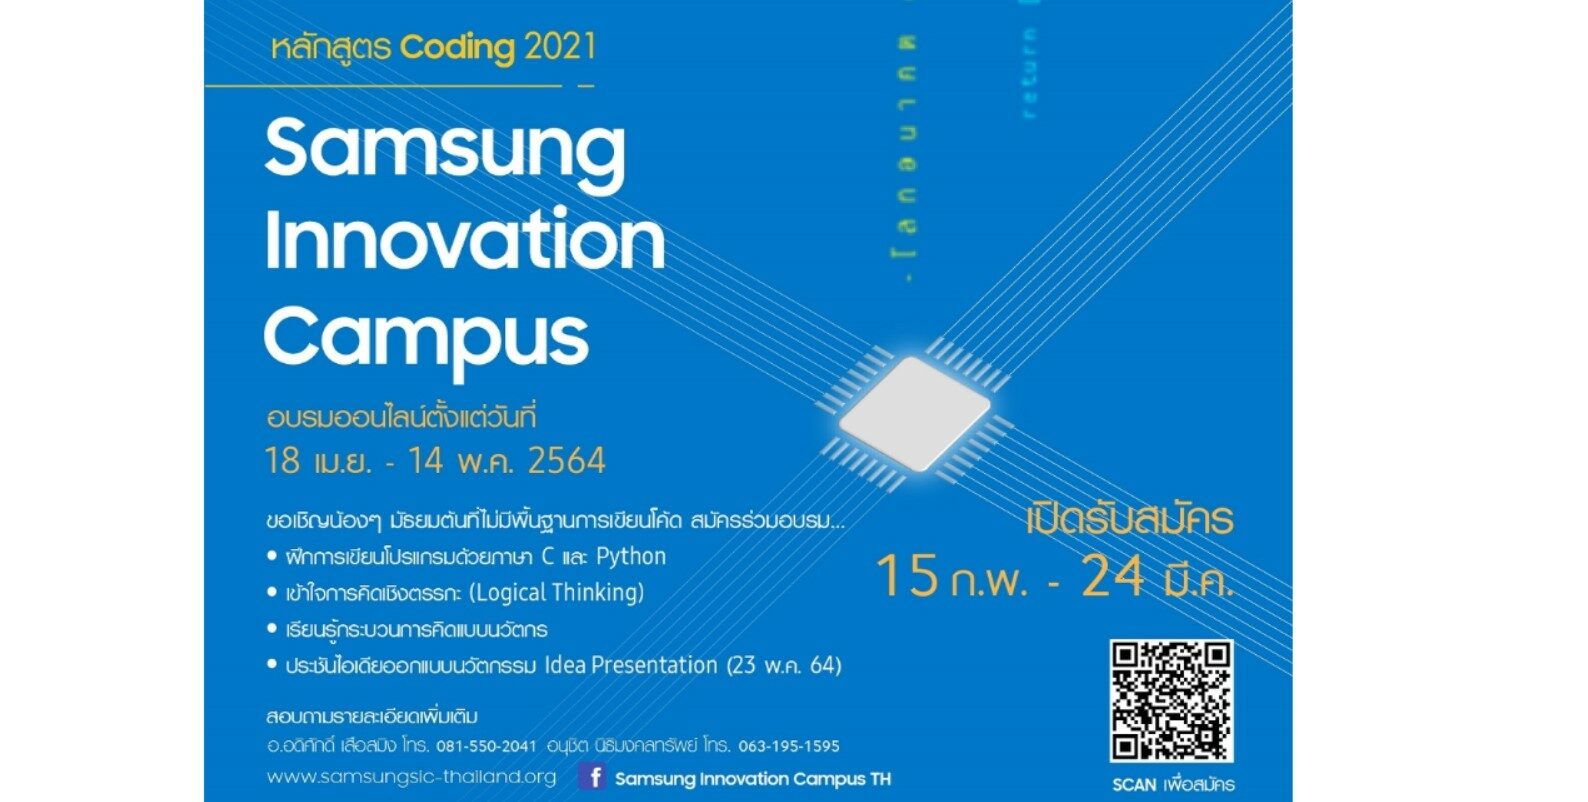 ปิดเทอมนี้เรียนโคดดิ้งฟรี ! กับซัมซุง ในโครงการ Samsung Innovation Campus